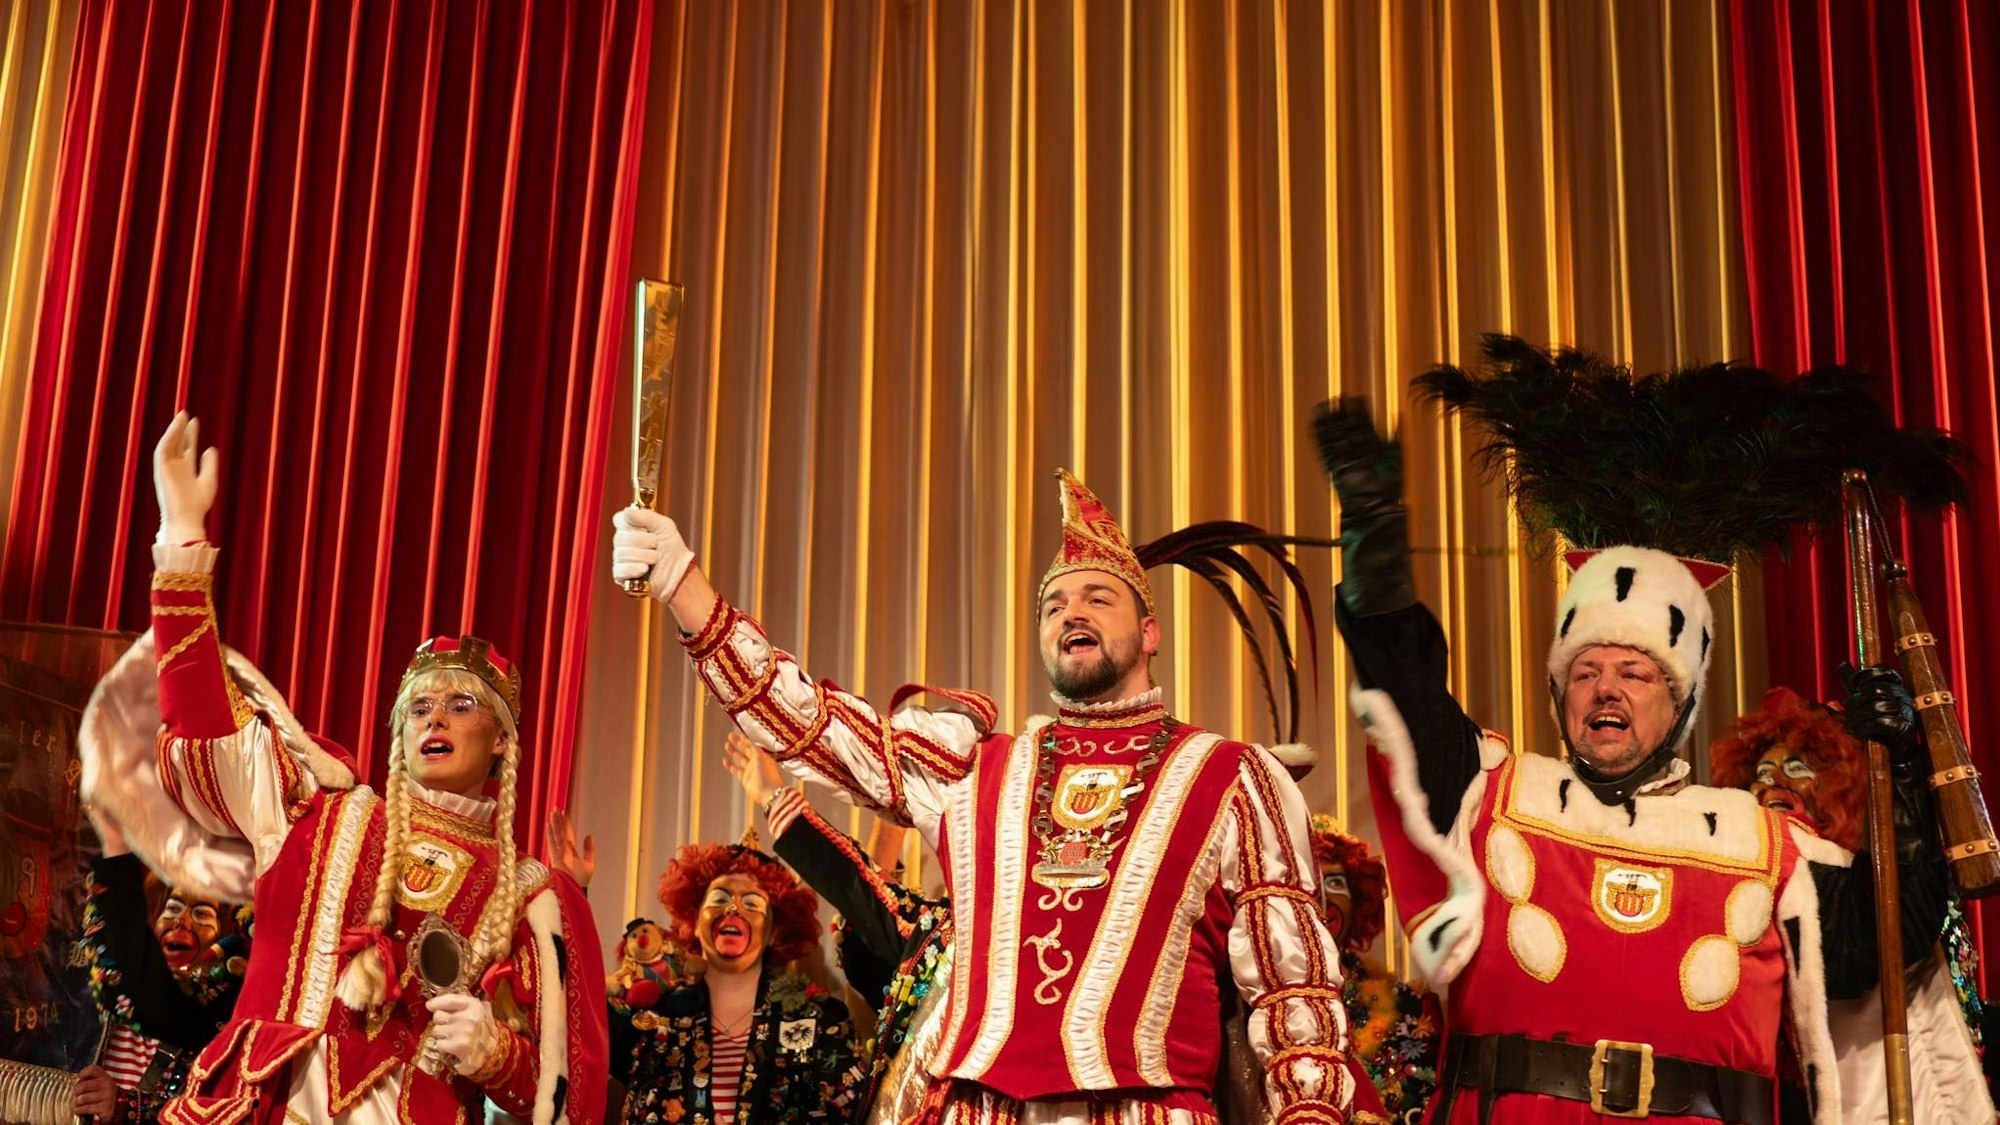 Jungfrau, Prinz und Bauer mit der karnevalistischen Alaaf-Geste